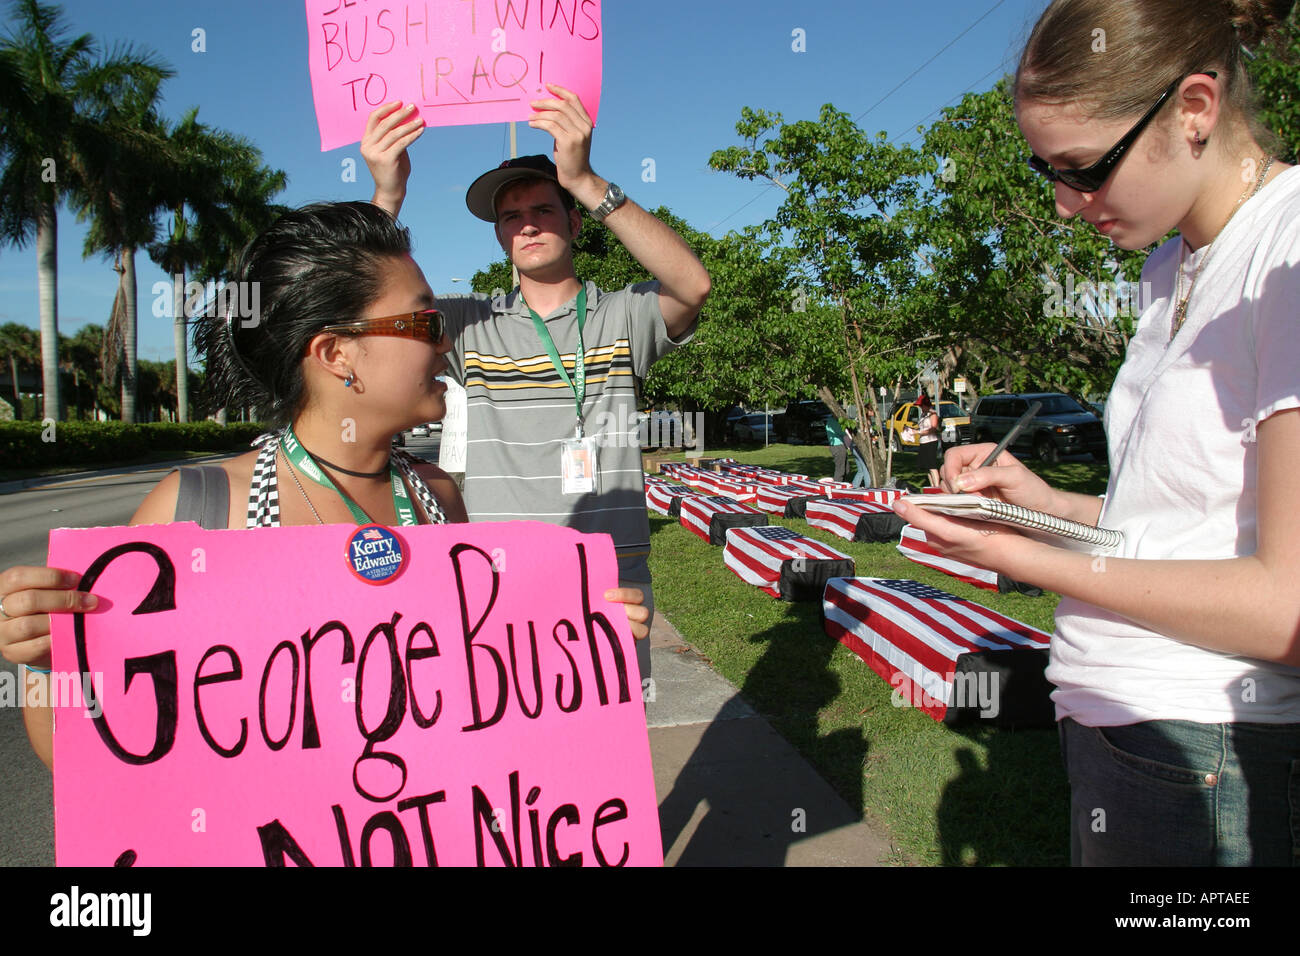 Miami Florida, Coral Gables, University of Miami, erste Bush Kerry Präsidentschaftsdebatte, Kampagnen, Protestaktionen, Erwachsene Erwachsene Frauen Frauen weibliche Dame, journa Stockfoto